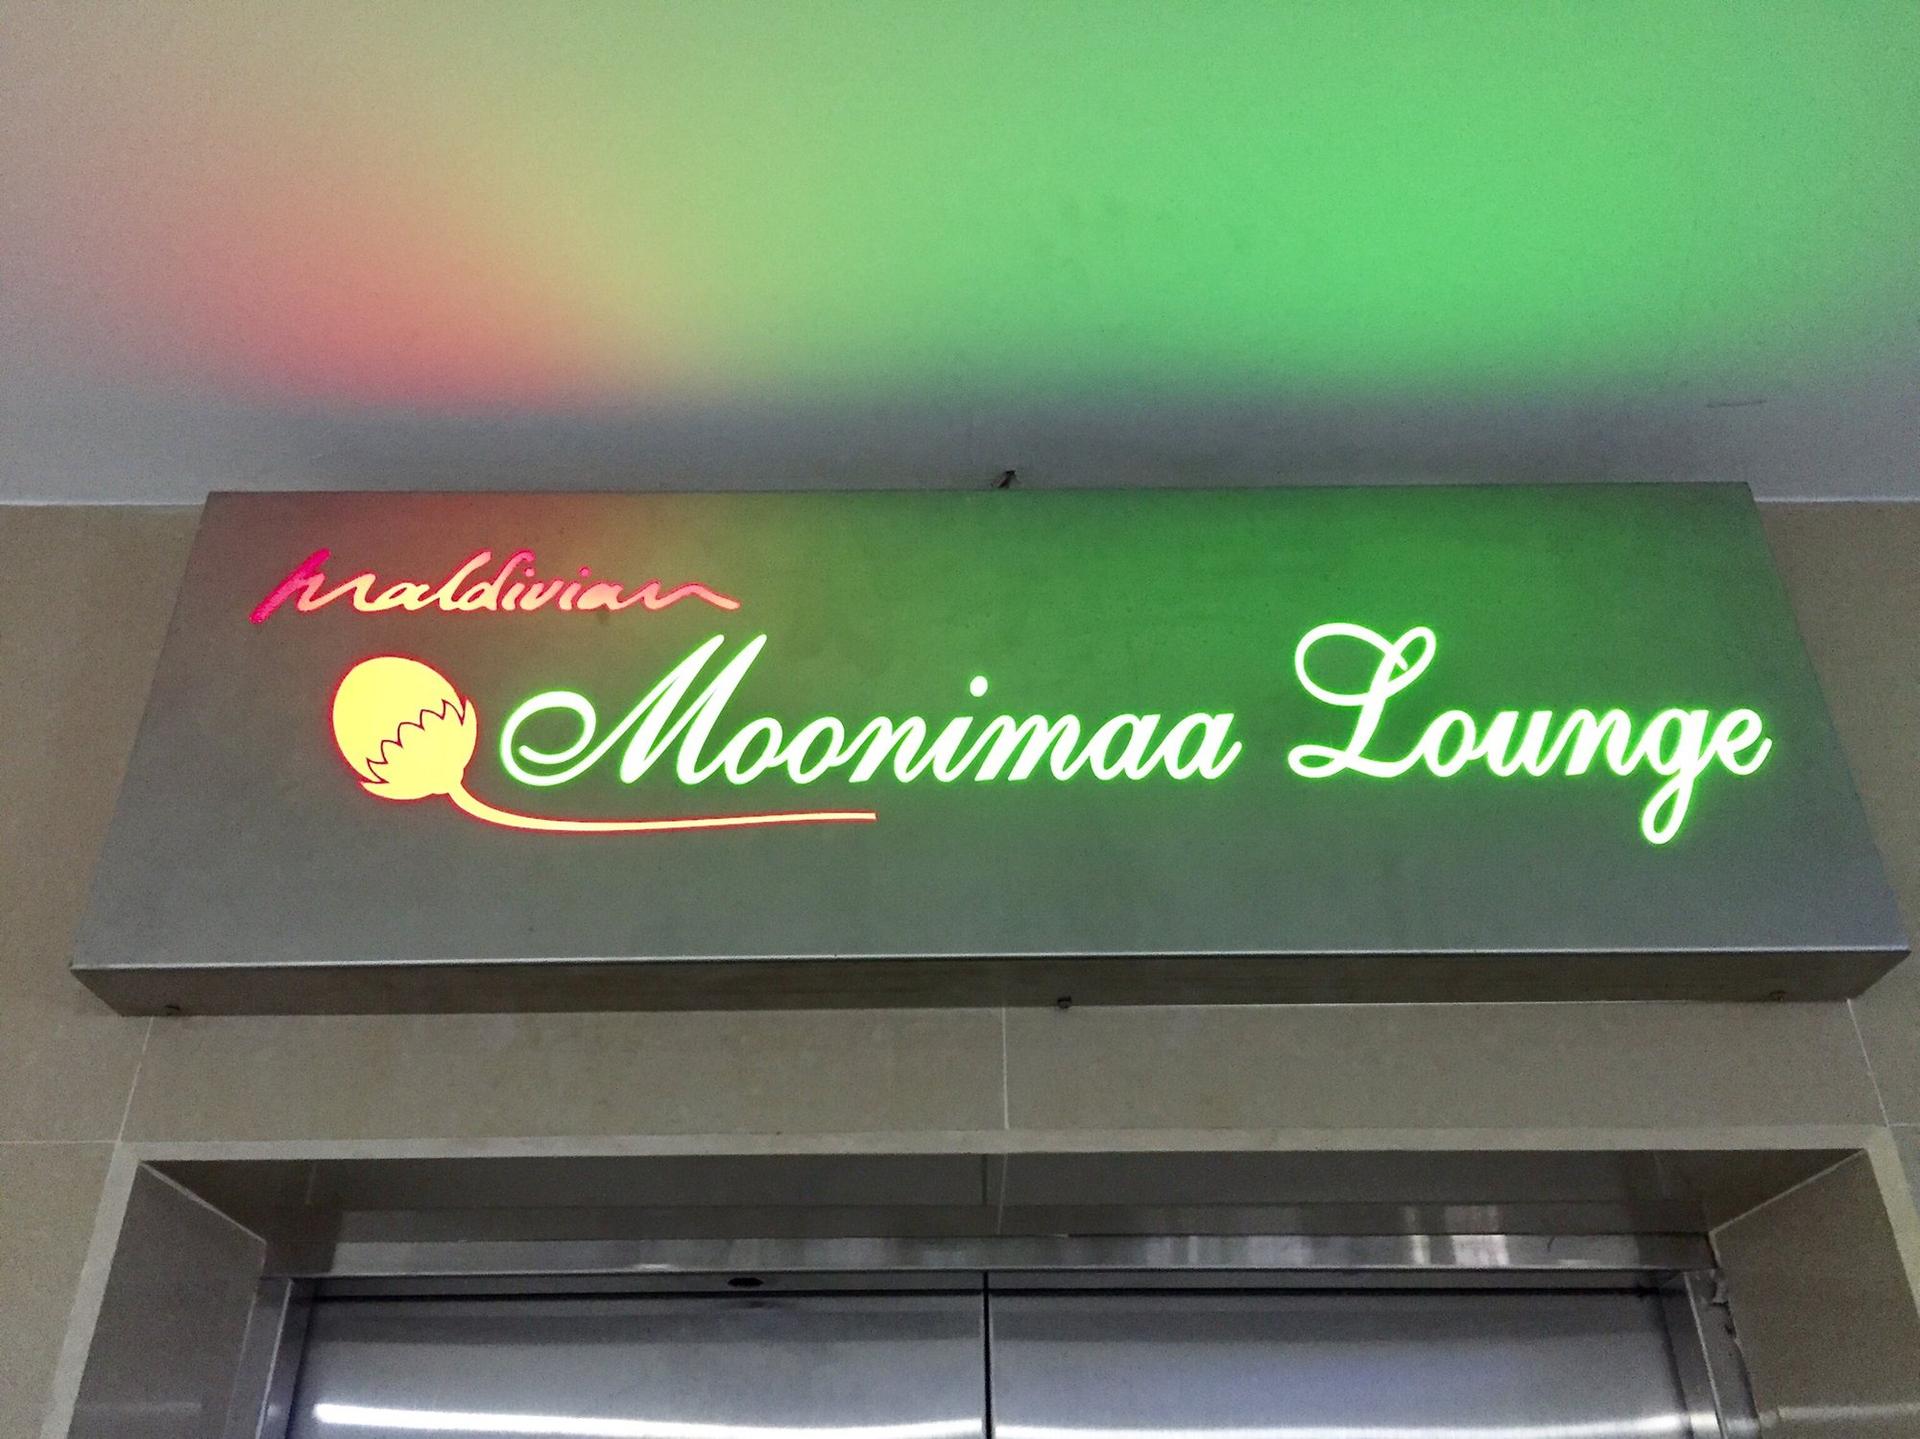 Moonimaa Lounge image 20 of 21